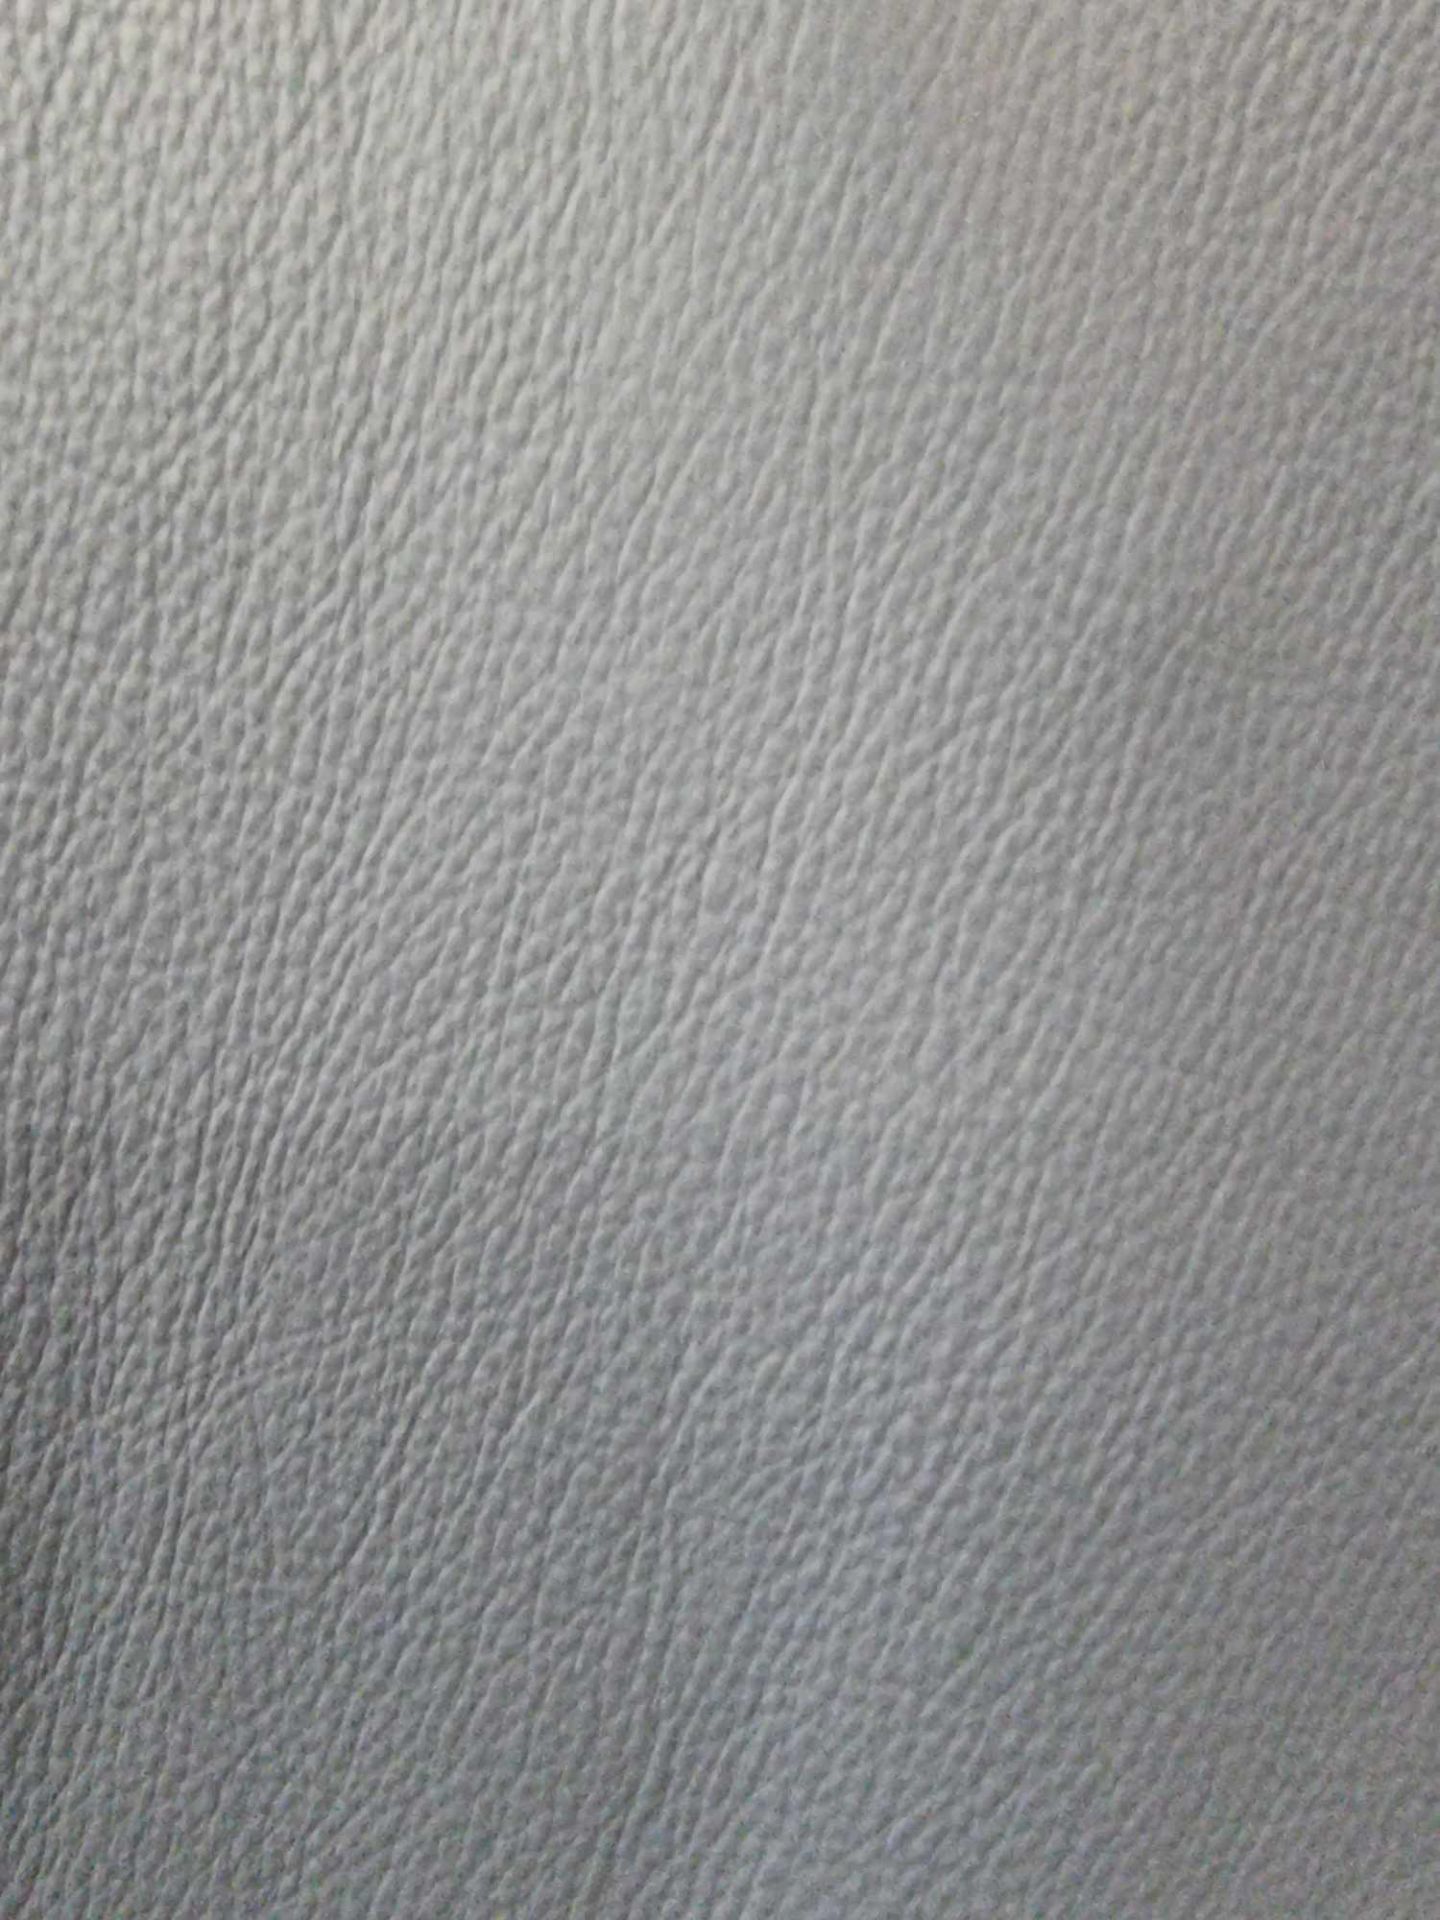 Prescott Santorini Artic Leather Hide approximately 4.8mÂ² 2.4 x 2cm - Bild 2 aus 3